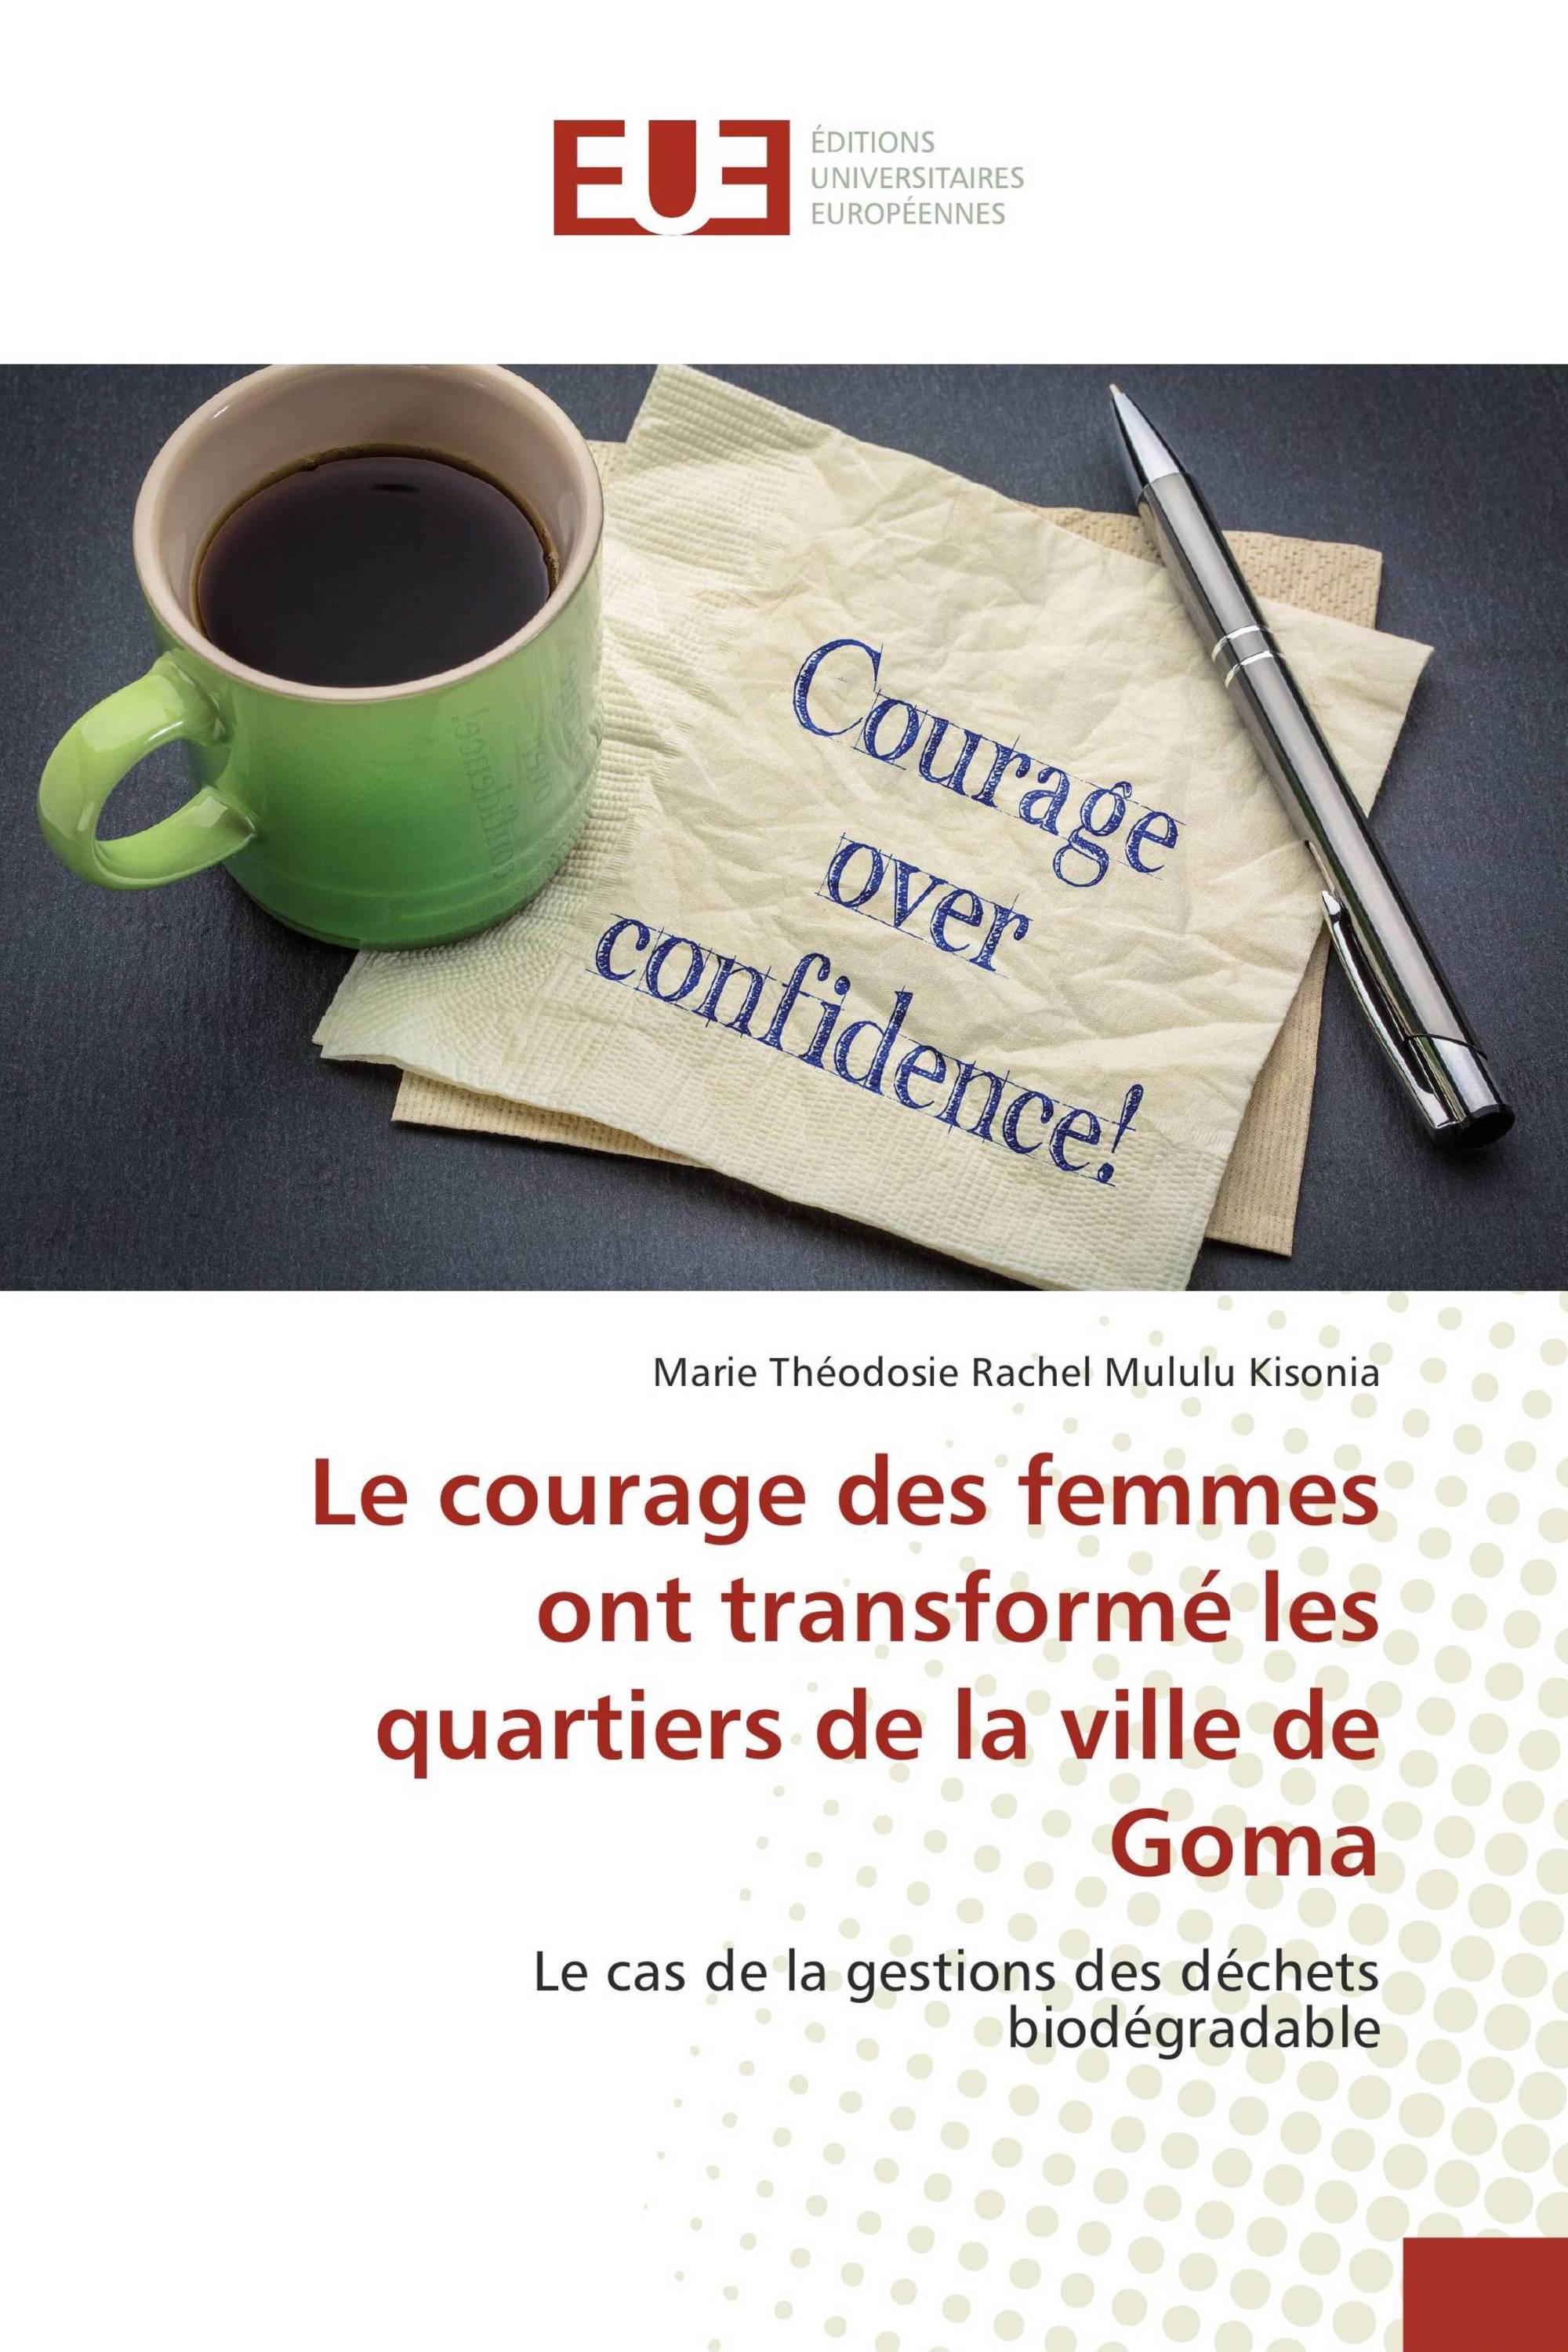 Le courage des femmes ont transformé les quartiers de la ville de Goma